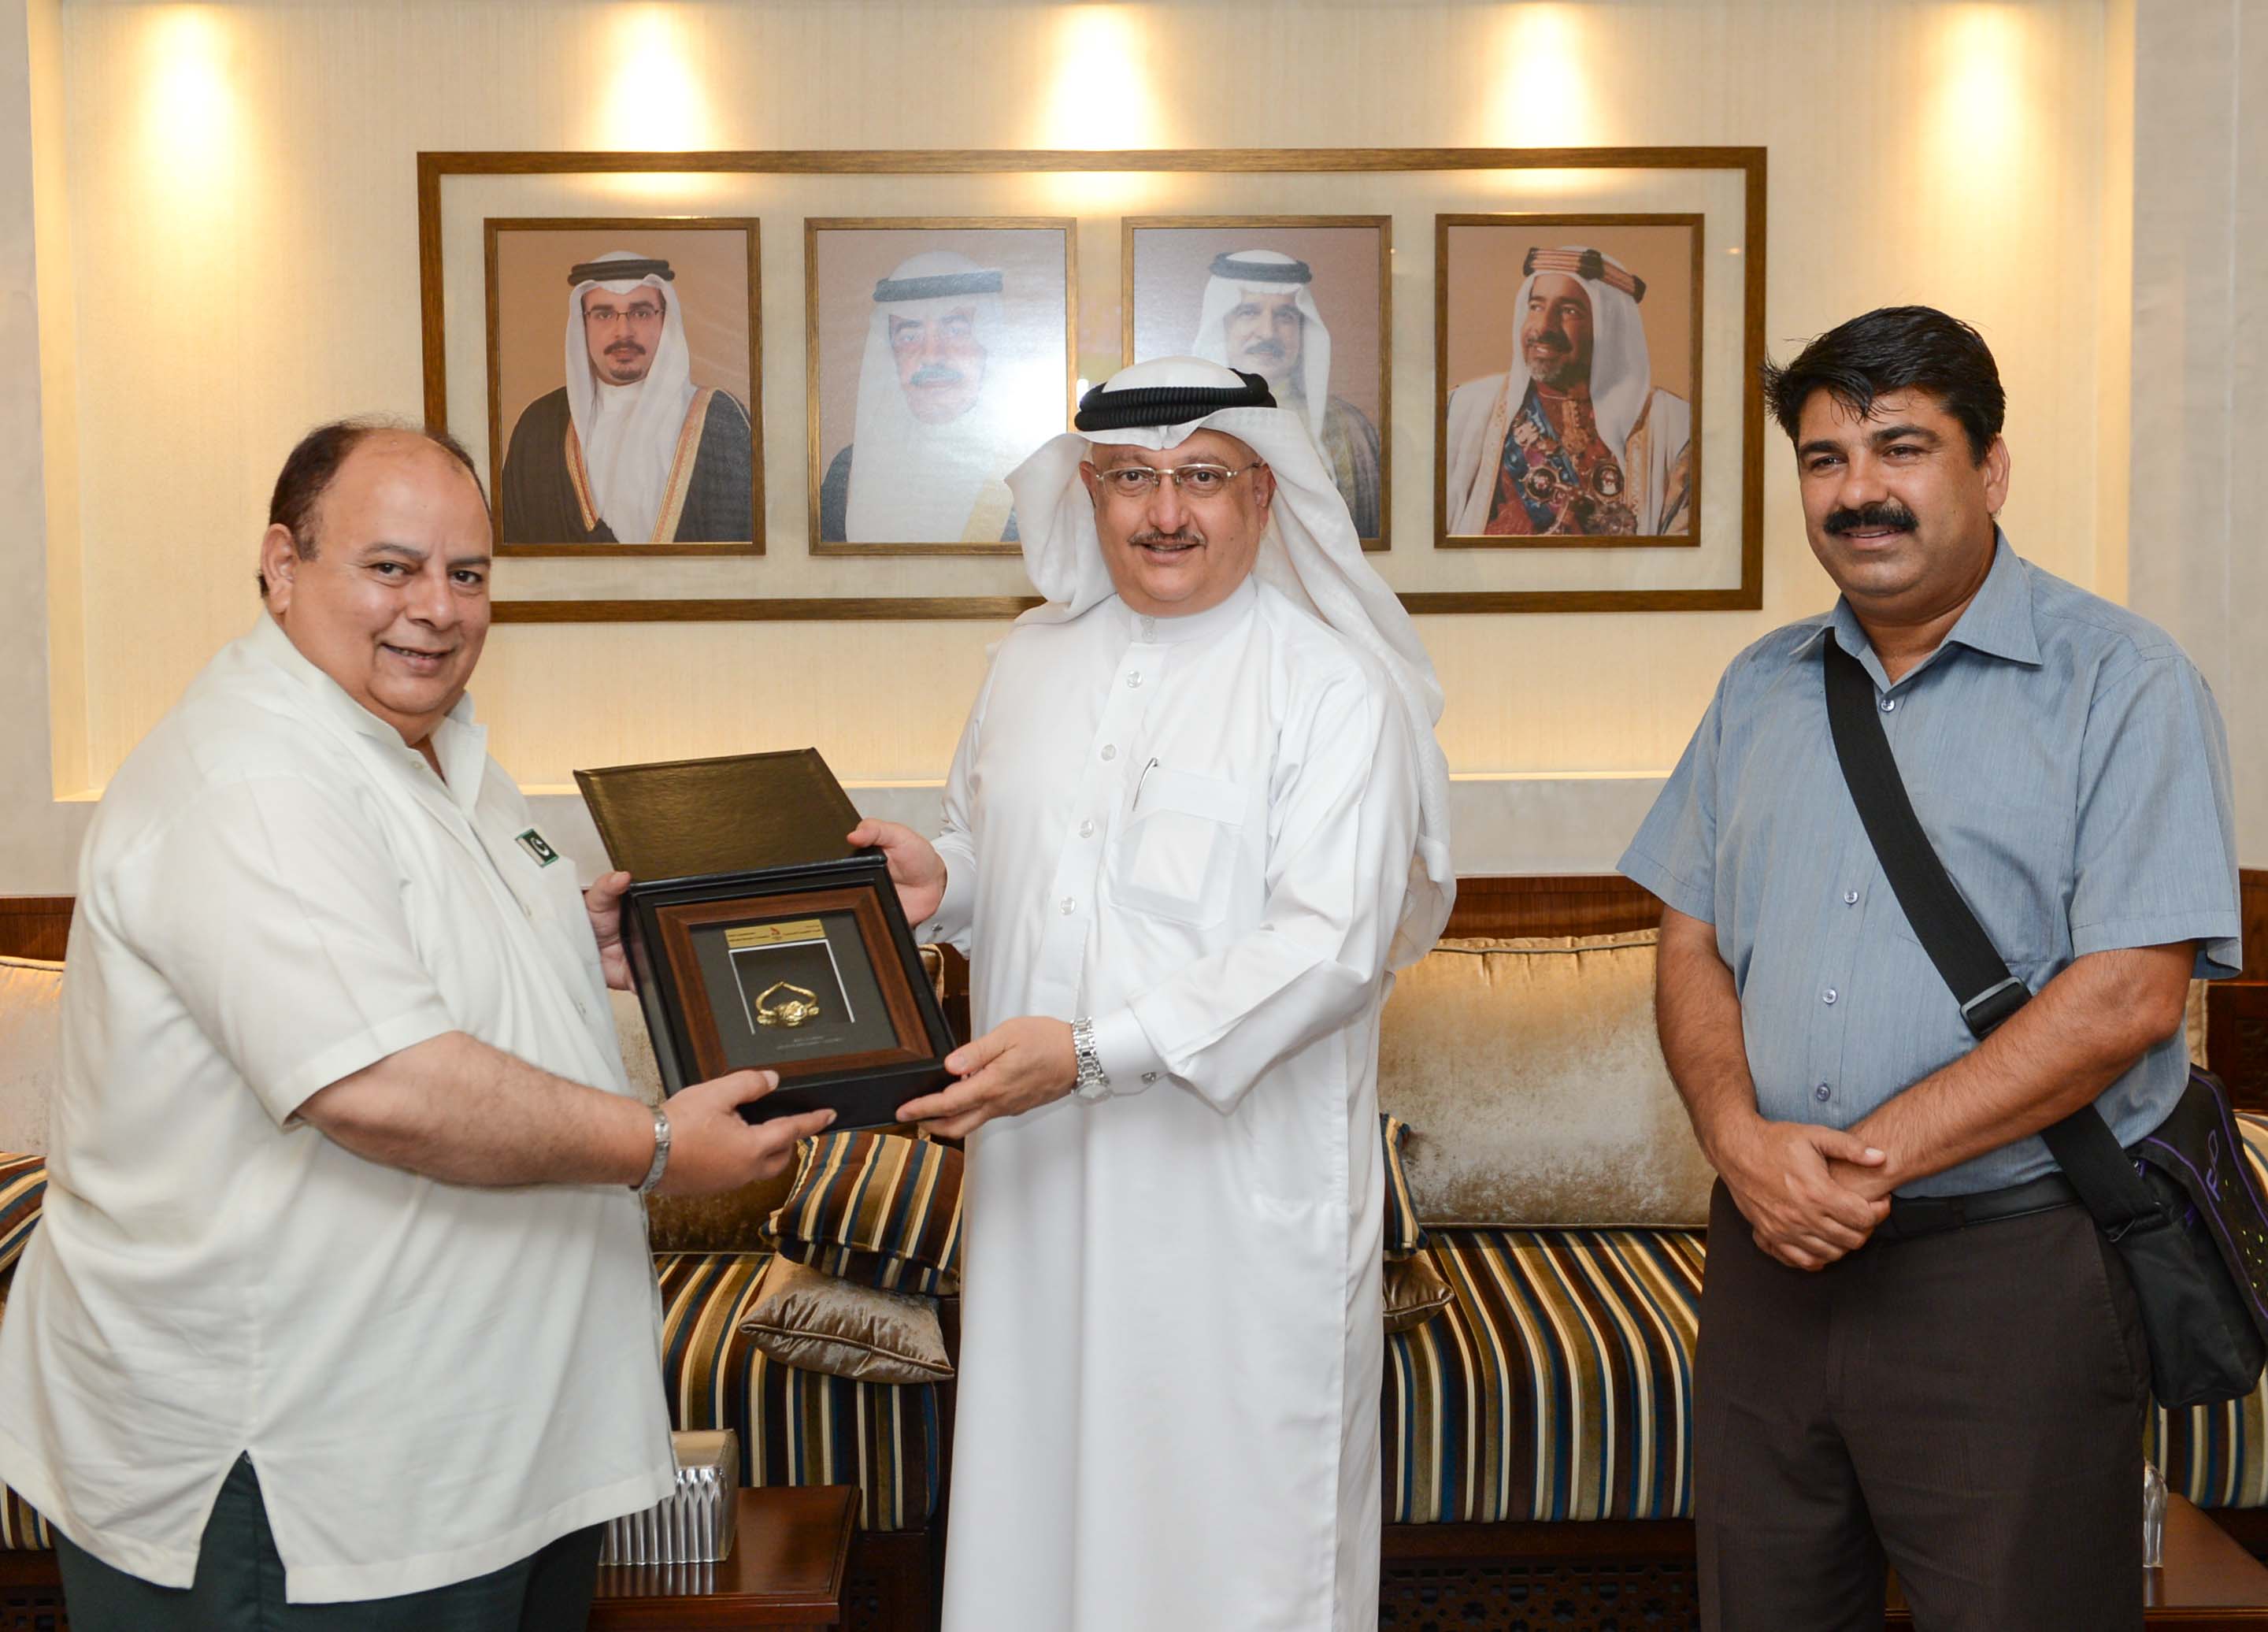 Abdulrahman Askar (centre) presented a memento to Asghar Khan during their meeting ©Bahrain Olympic Committee